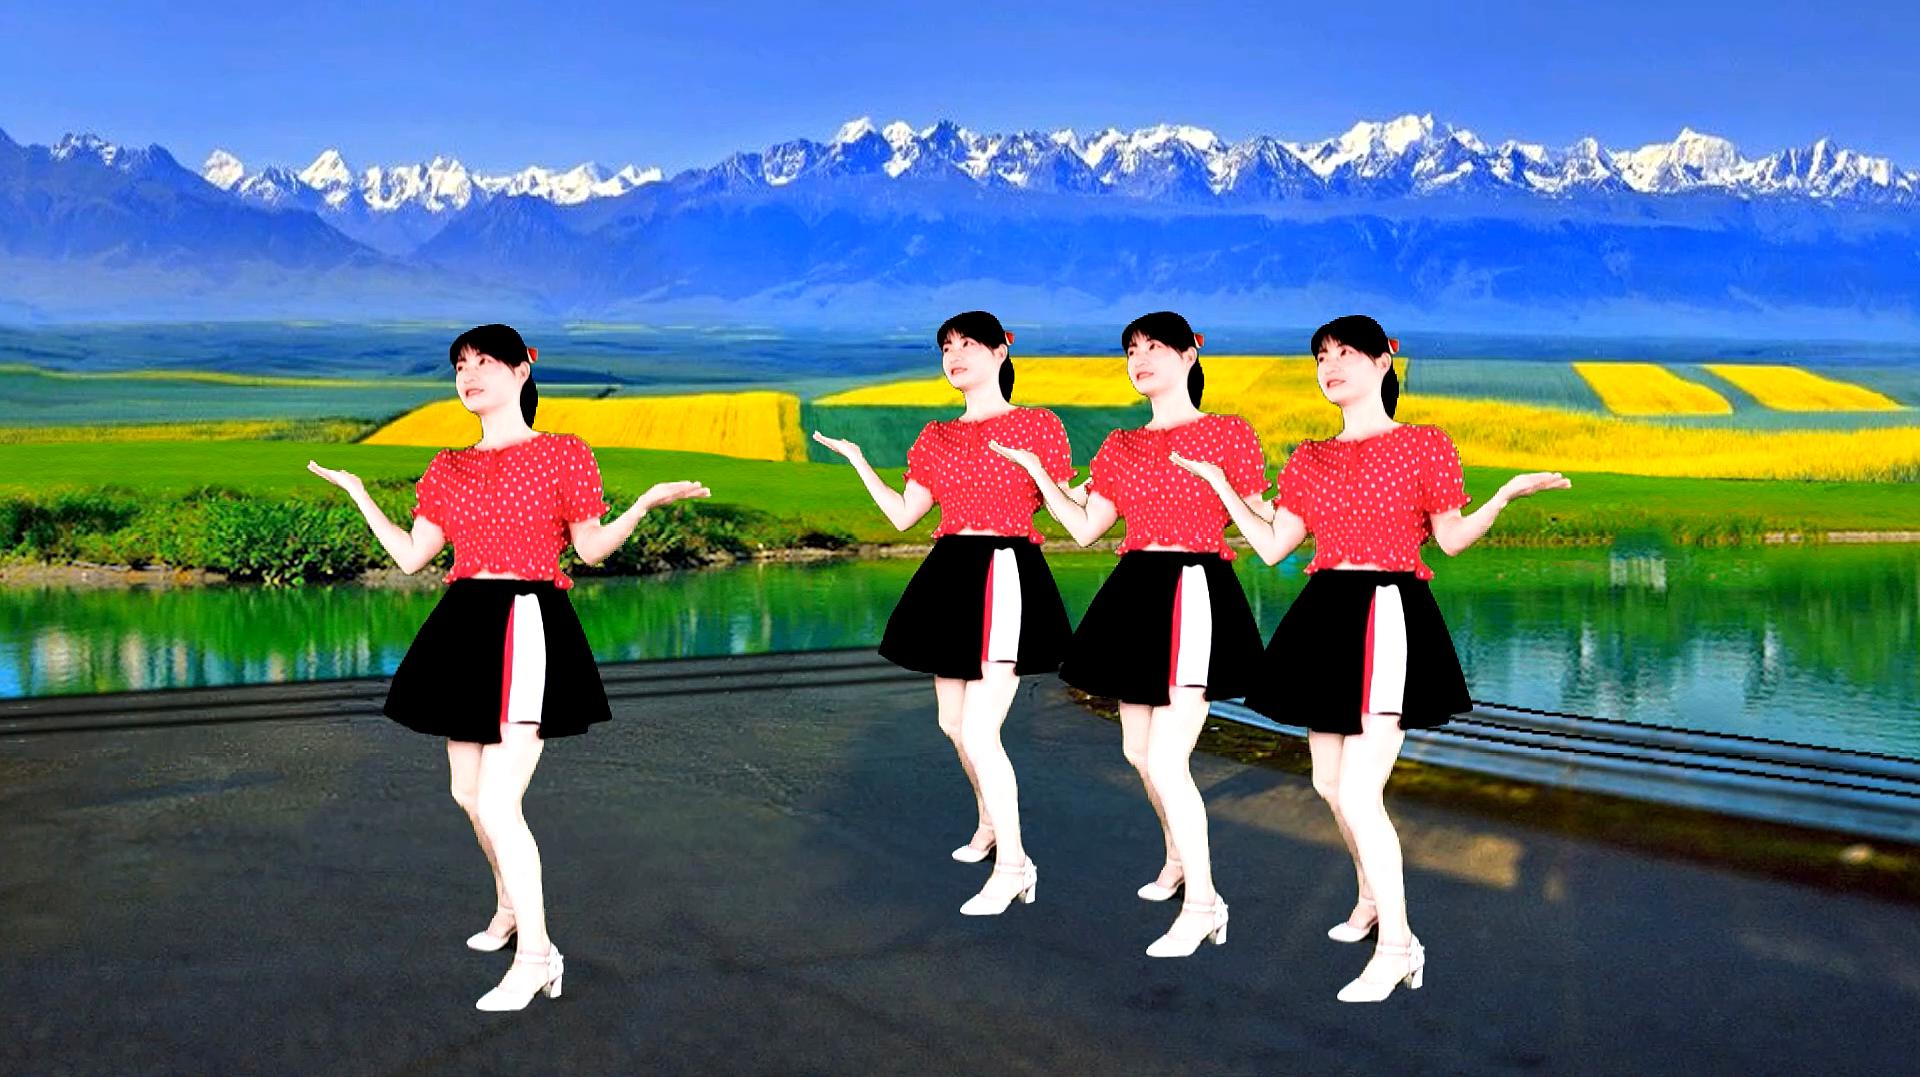 热门广场舞《小行囊》简单时尚32步健身舞,好看好学送给你